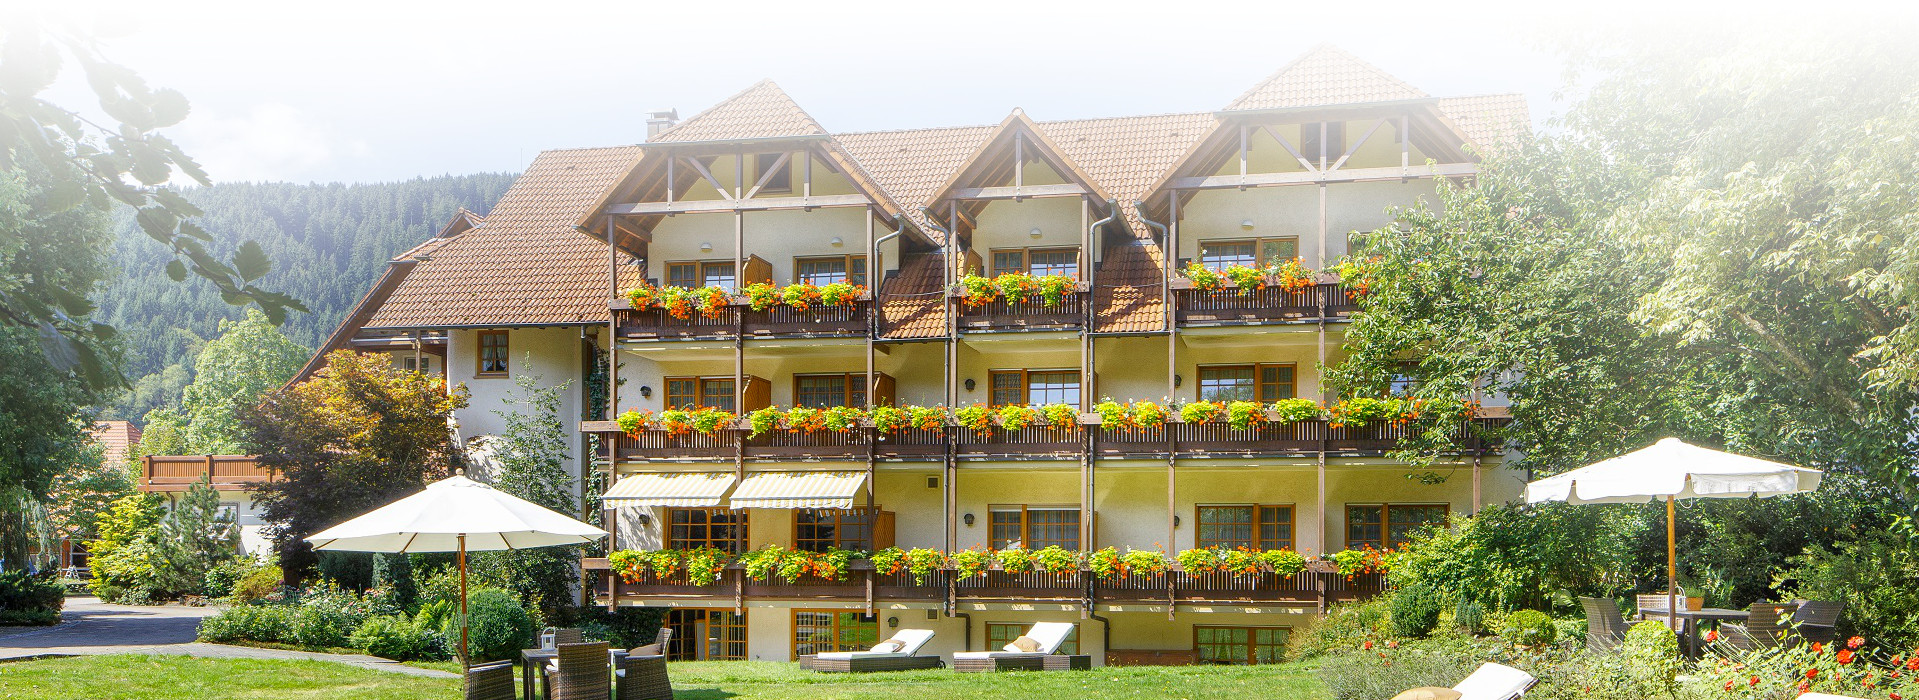 Ein Hotel mit vielen Balkonen. An jedem Balkon sind Blumenkästen befestigt. Im Garten vor dem Hotel stehen Liegen und verteilte Sitzgruppen mit Sonnenschirmen und Tischen.